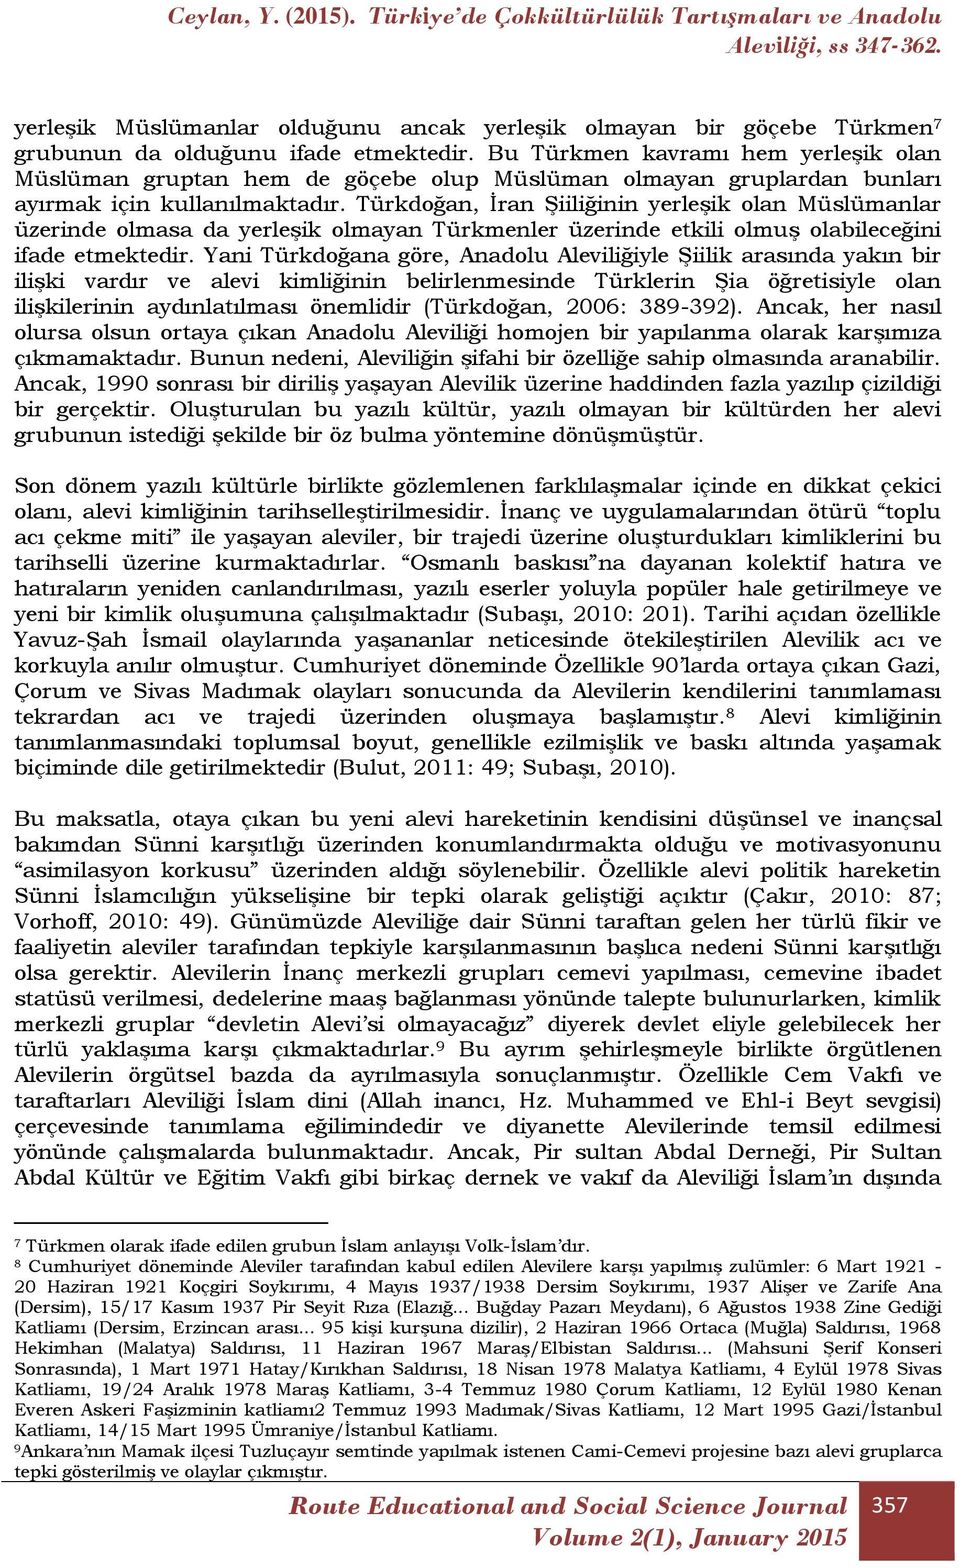 Türkdoğan, İran Şiiliğinin yerleşik olan Müslümanlar üzerinde olmasa da yerleşik olmayan Türkmenler üzerinde etkili olmuş olabileceğini ifade etmektedir.